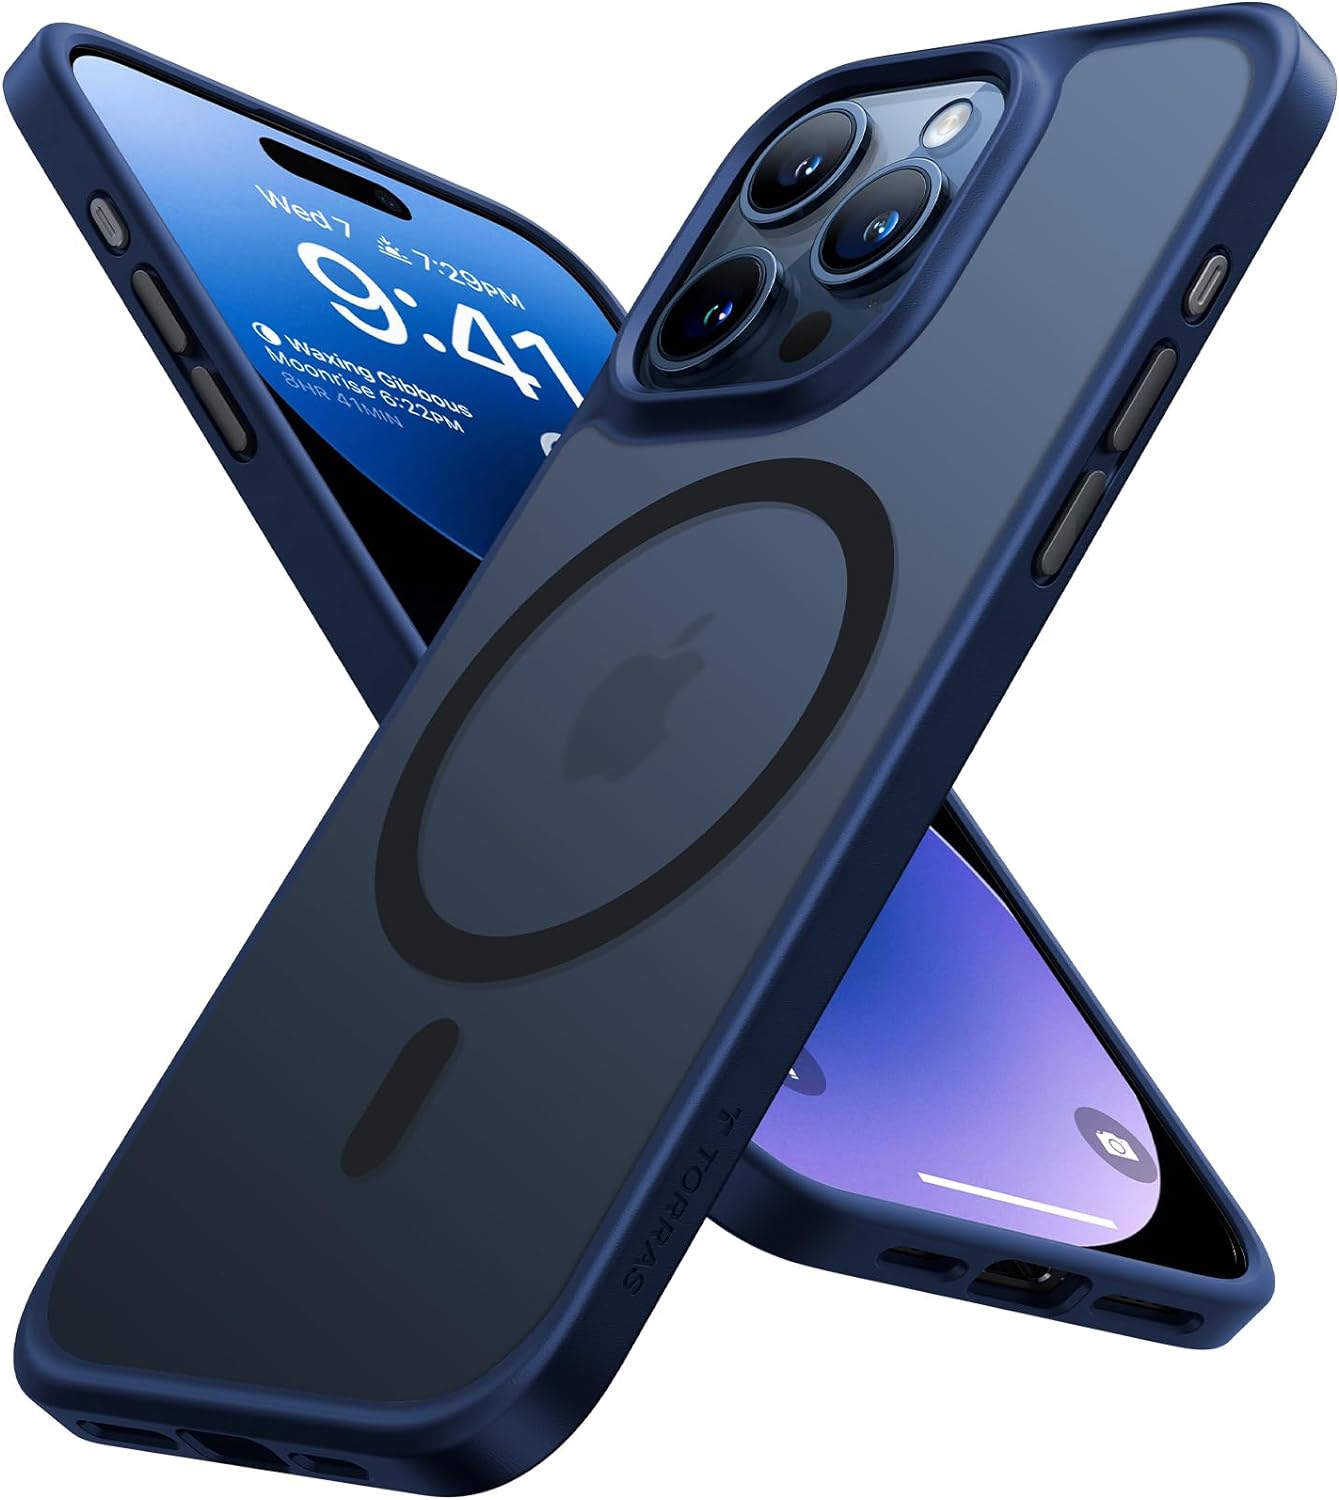 Phone 15 Pro bleu marine avec coque Torras Guardian mate, illustrant la compatibilité Magsafe et l'antichoc.